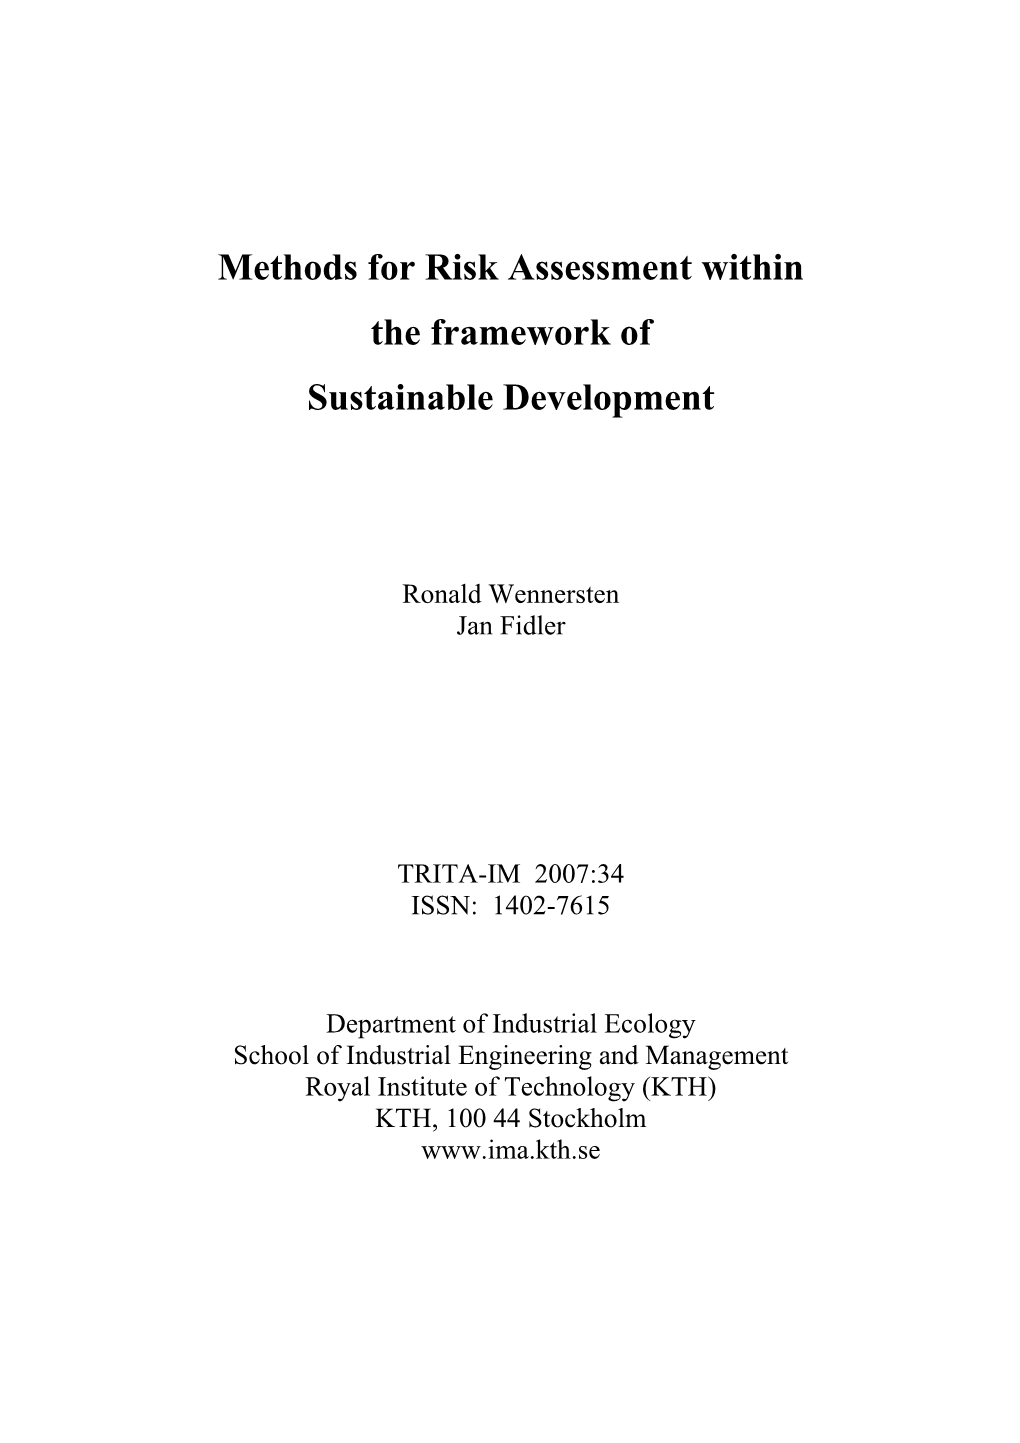 Methods for Risk Assessment Within the Framework of Sustainable Development